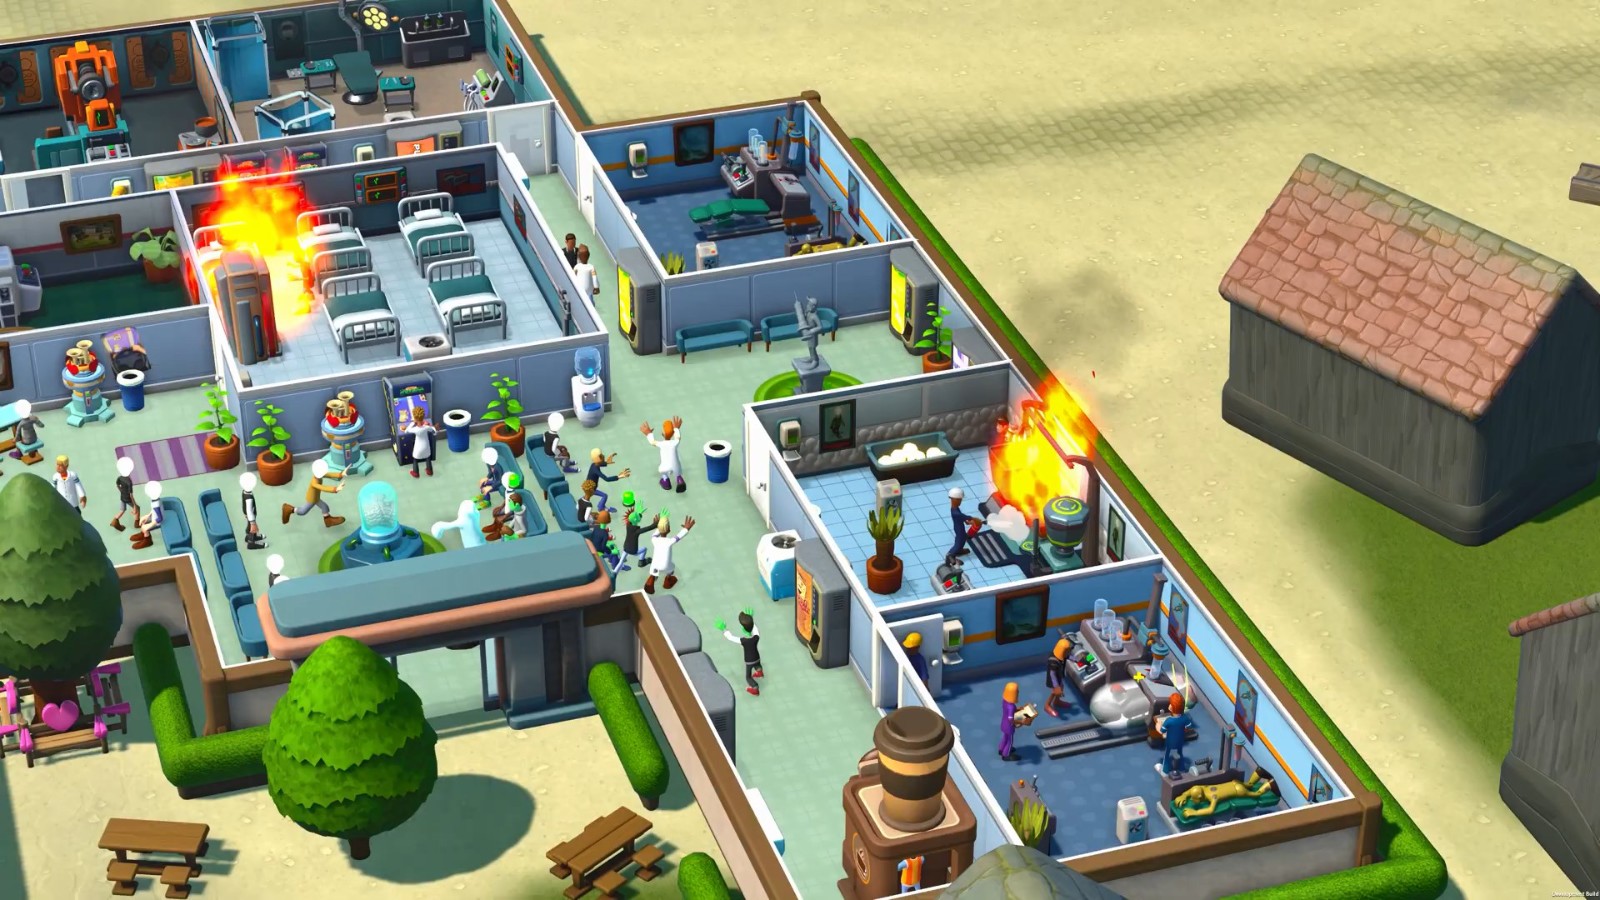 《双点校园》“医学院”DLC正式发售 新地点新课程